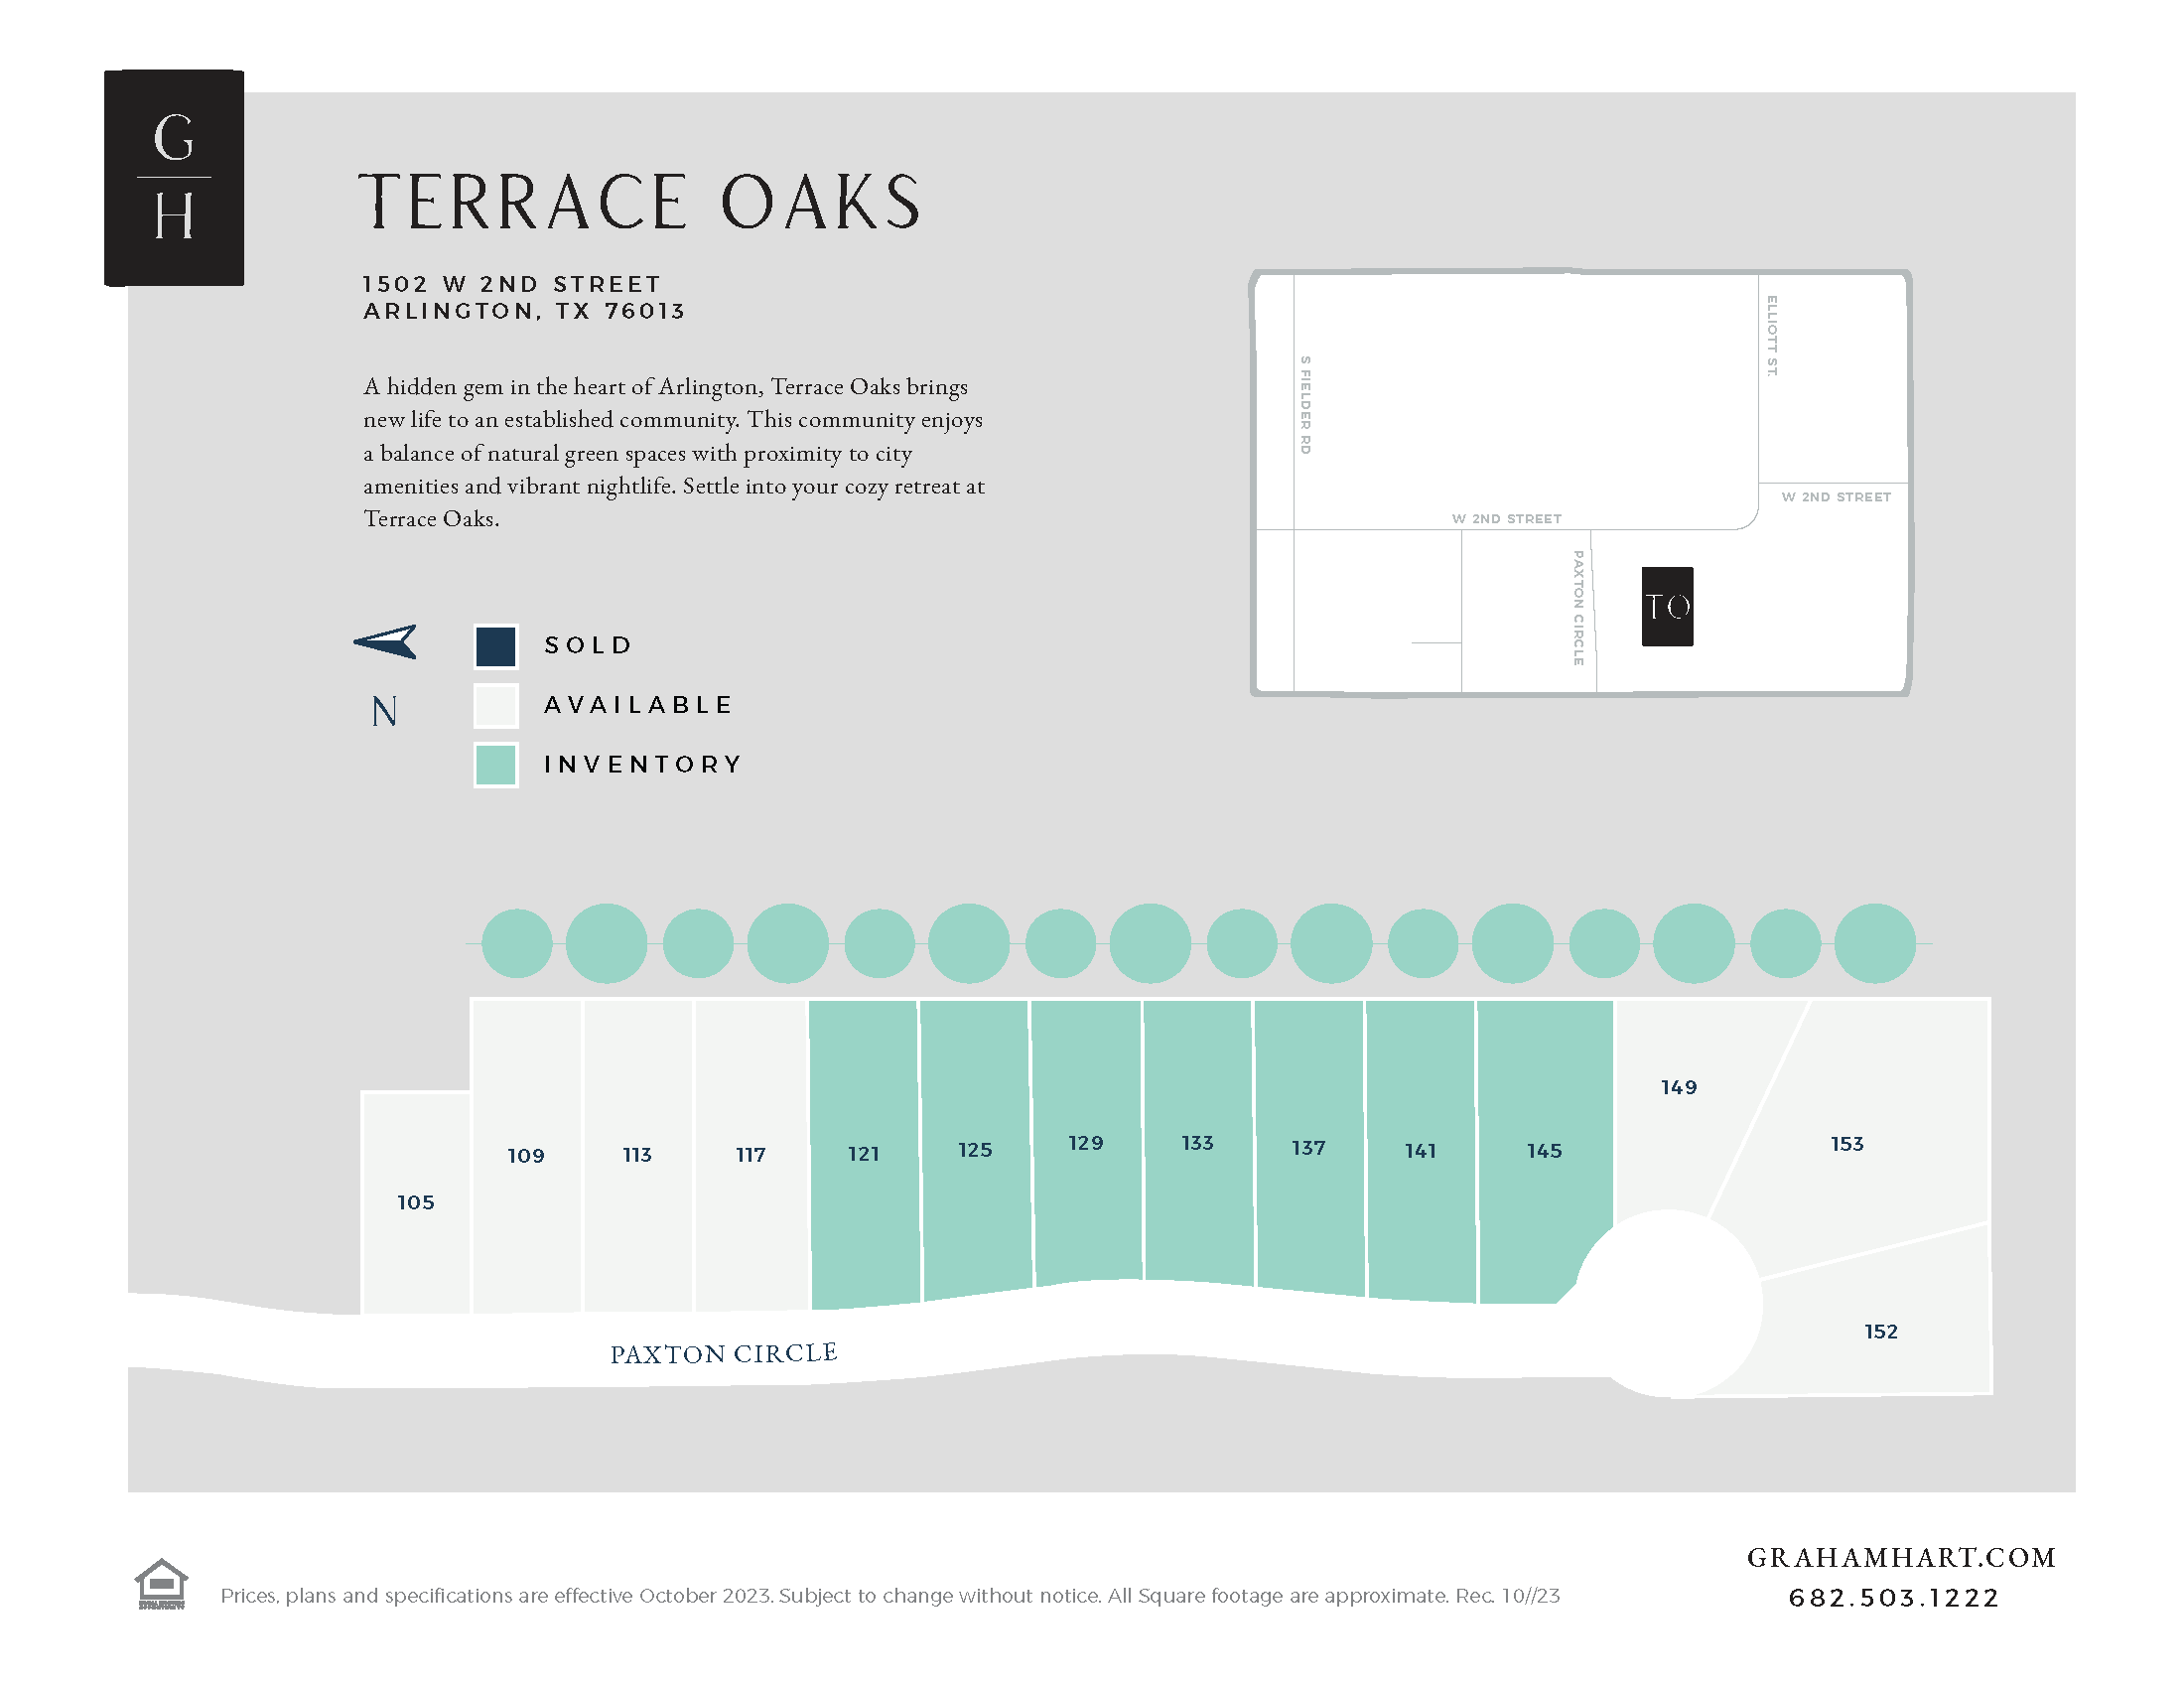 Terrace Oaks community plat map